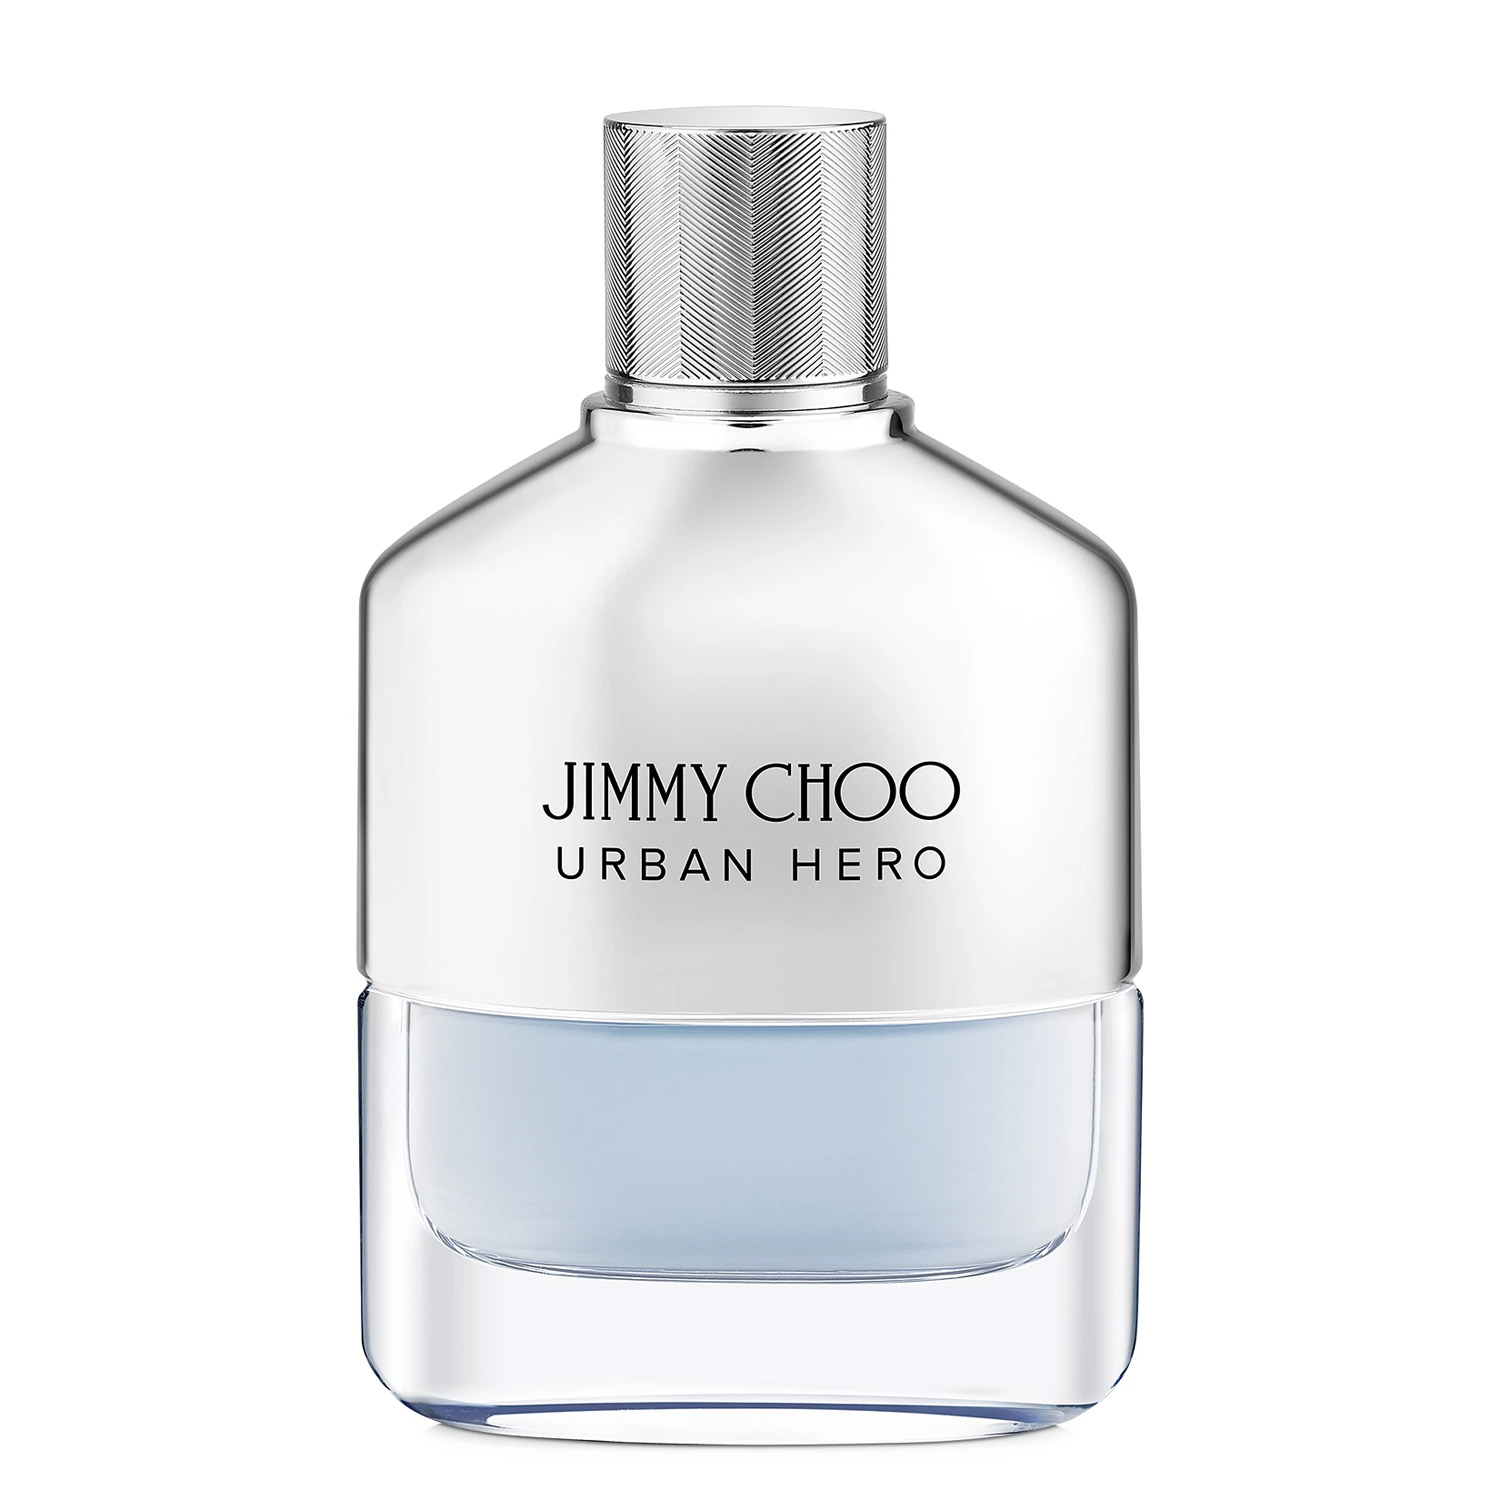 Jimmy-Choo-Urban-Hero-Jimmy-Choo